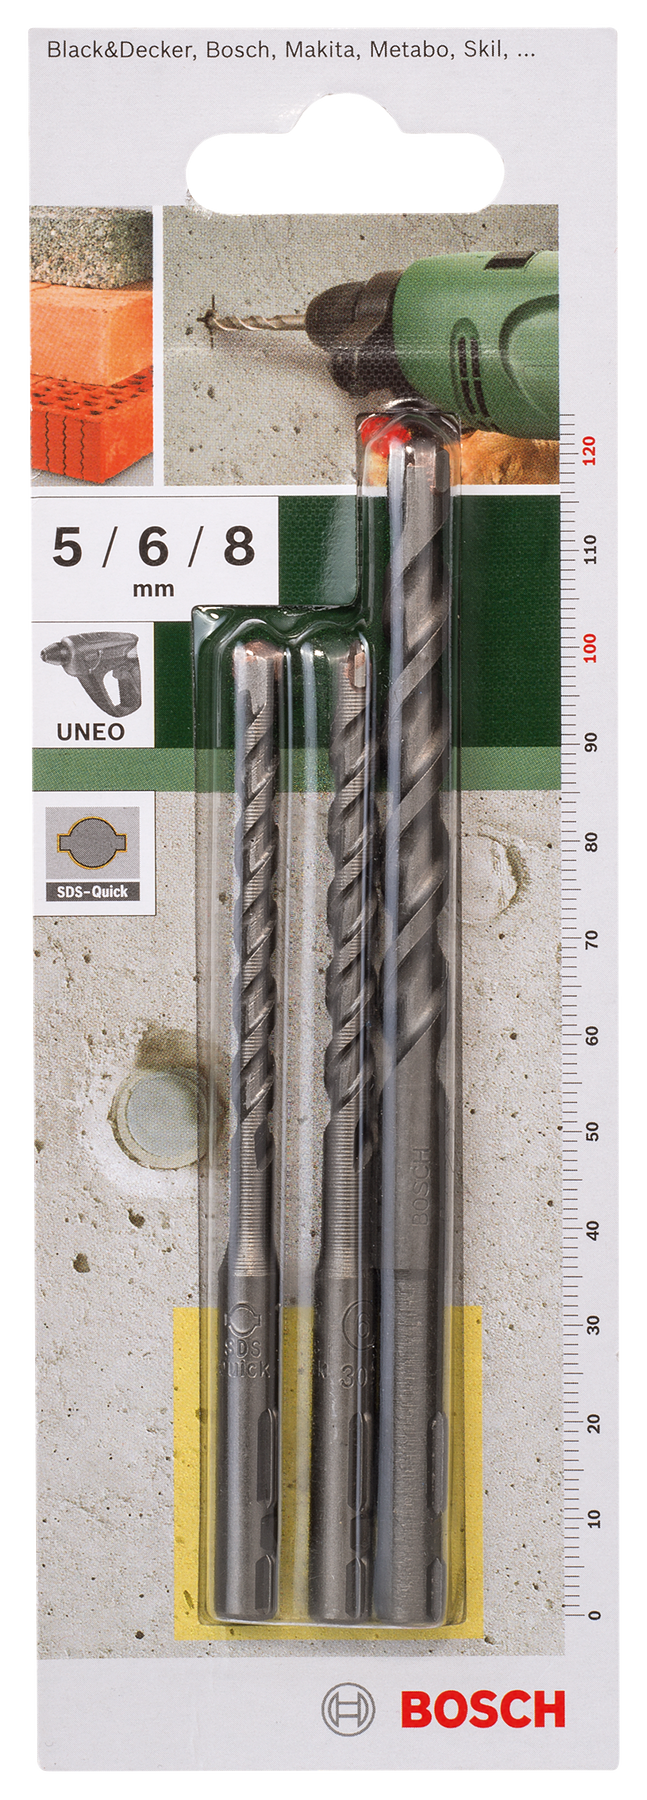 Bosch DIY Uneo Bohrer-Set für Beton mit SDS-Quick Ø 5/6/8 mm 3tlg.